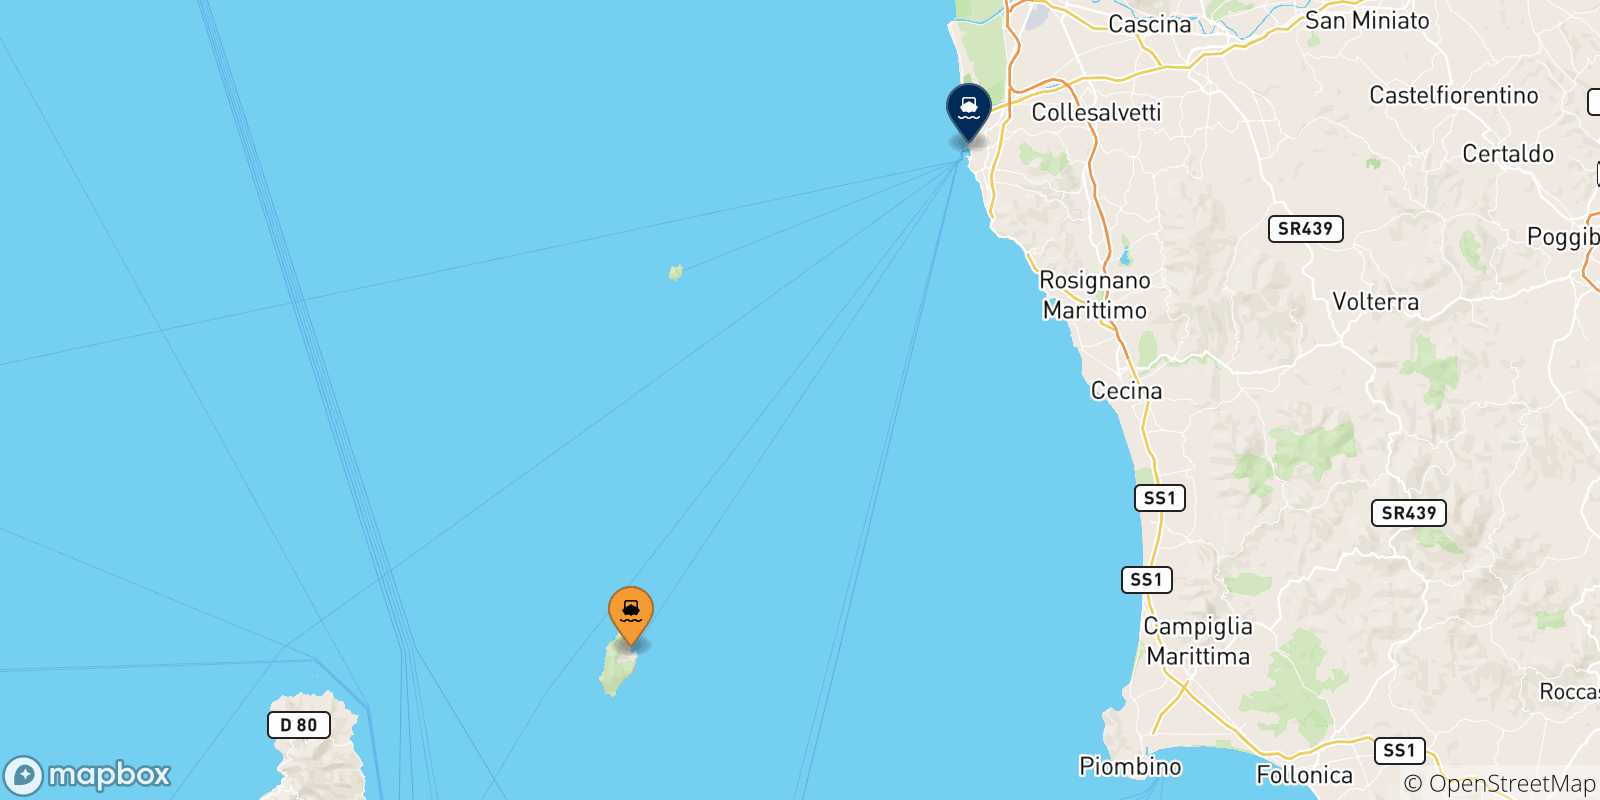 Mappa delle possibili rotte tra l'Isola Di Capraia e Livorno